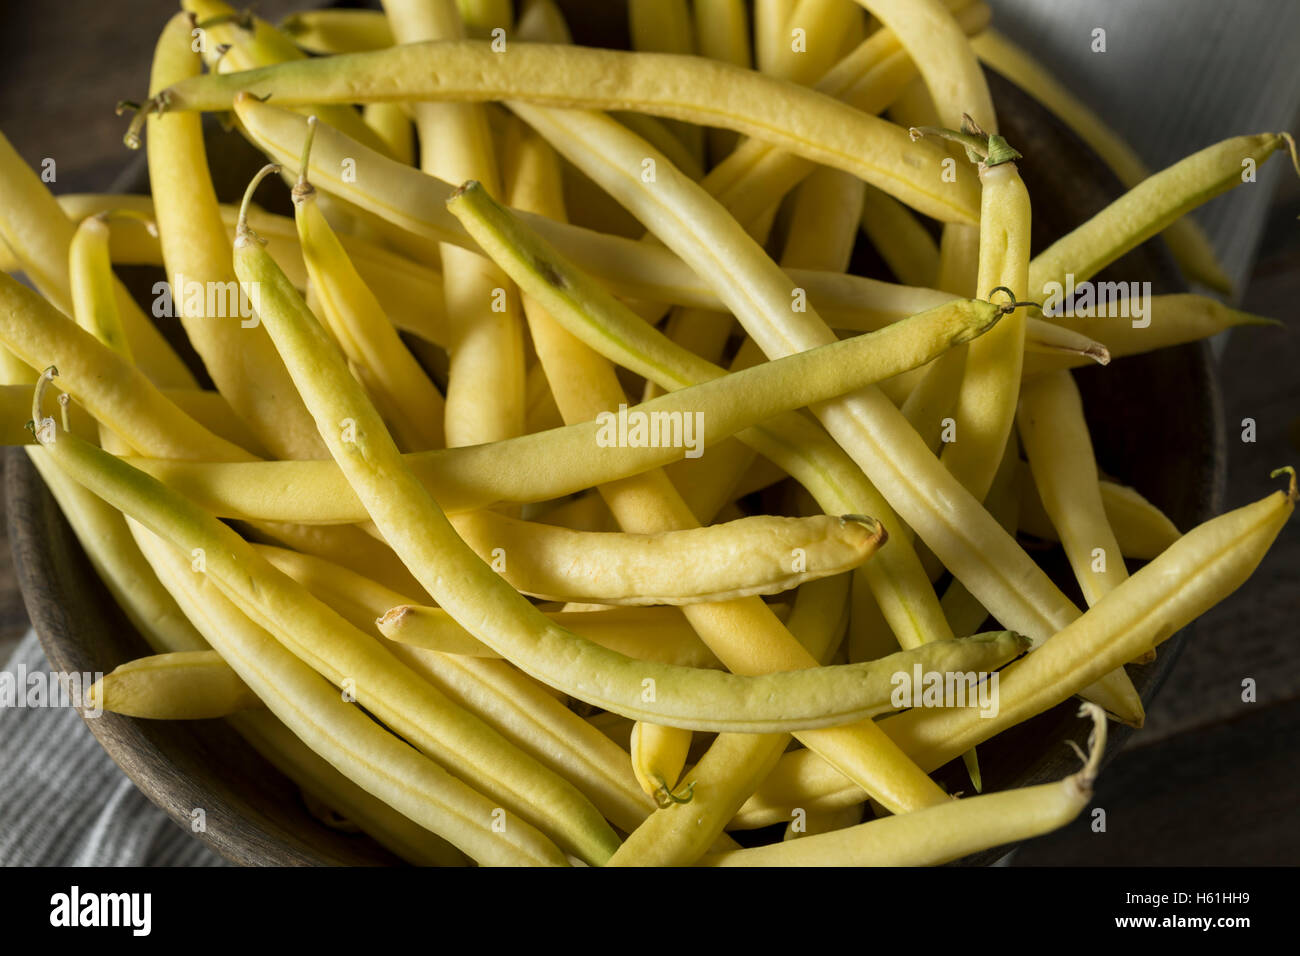 Materie organiche cera gialla fagioli pronti per cucinare Foto Stock